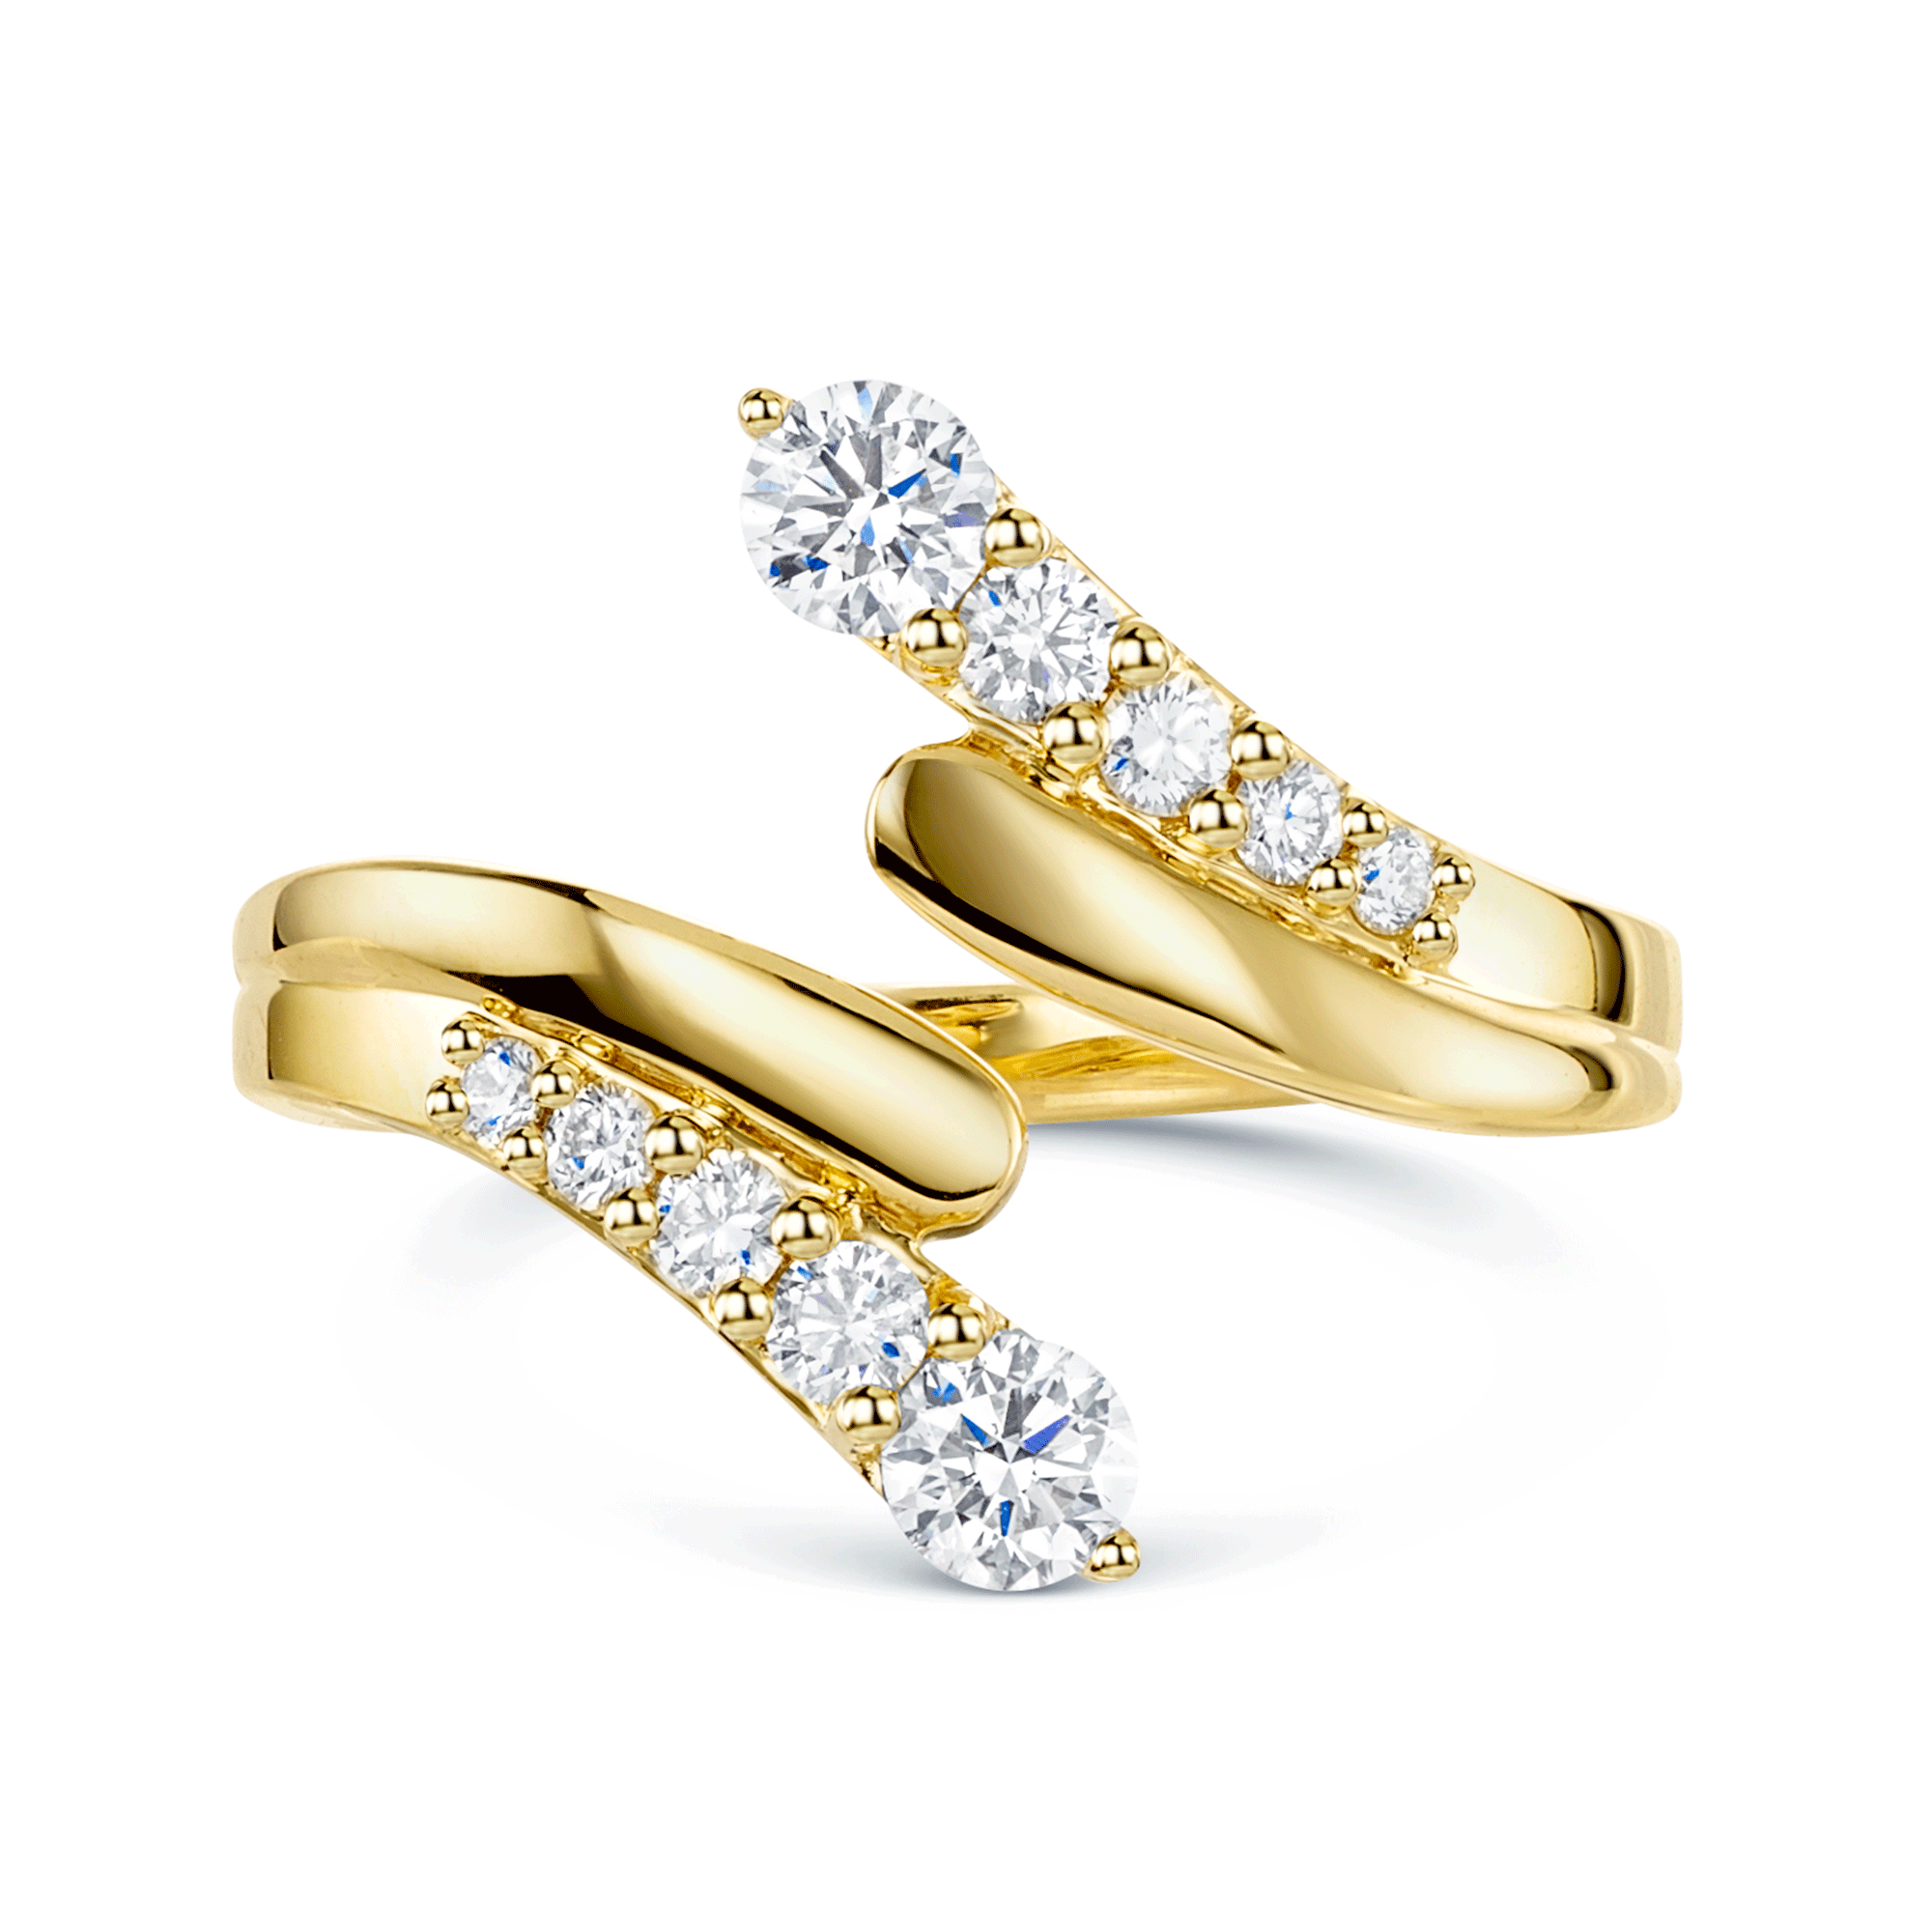 OPEIA Nova Collection Yellow Gold Round Brilliant Cut Diamond Wraparound Ring